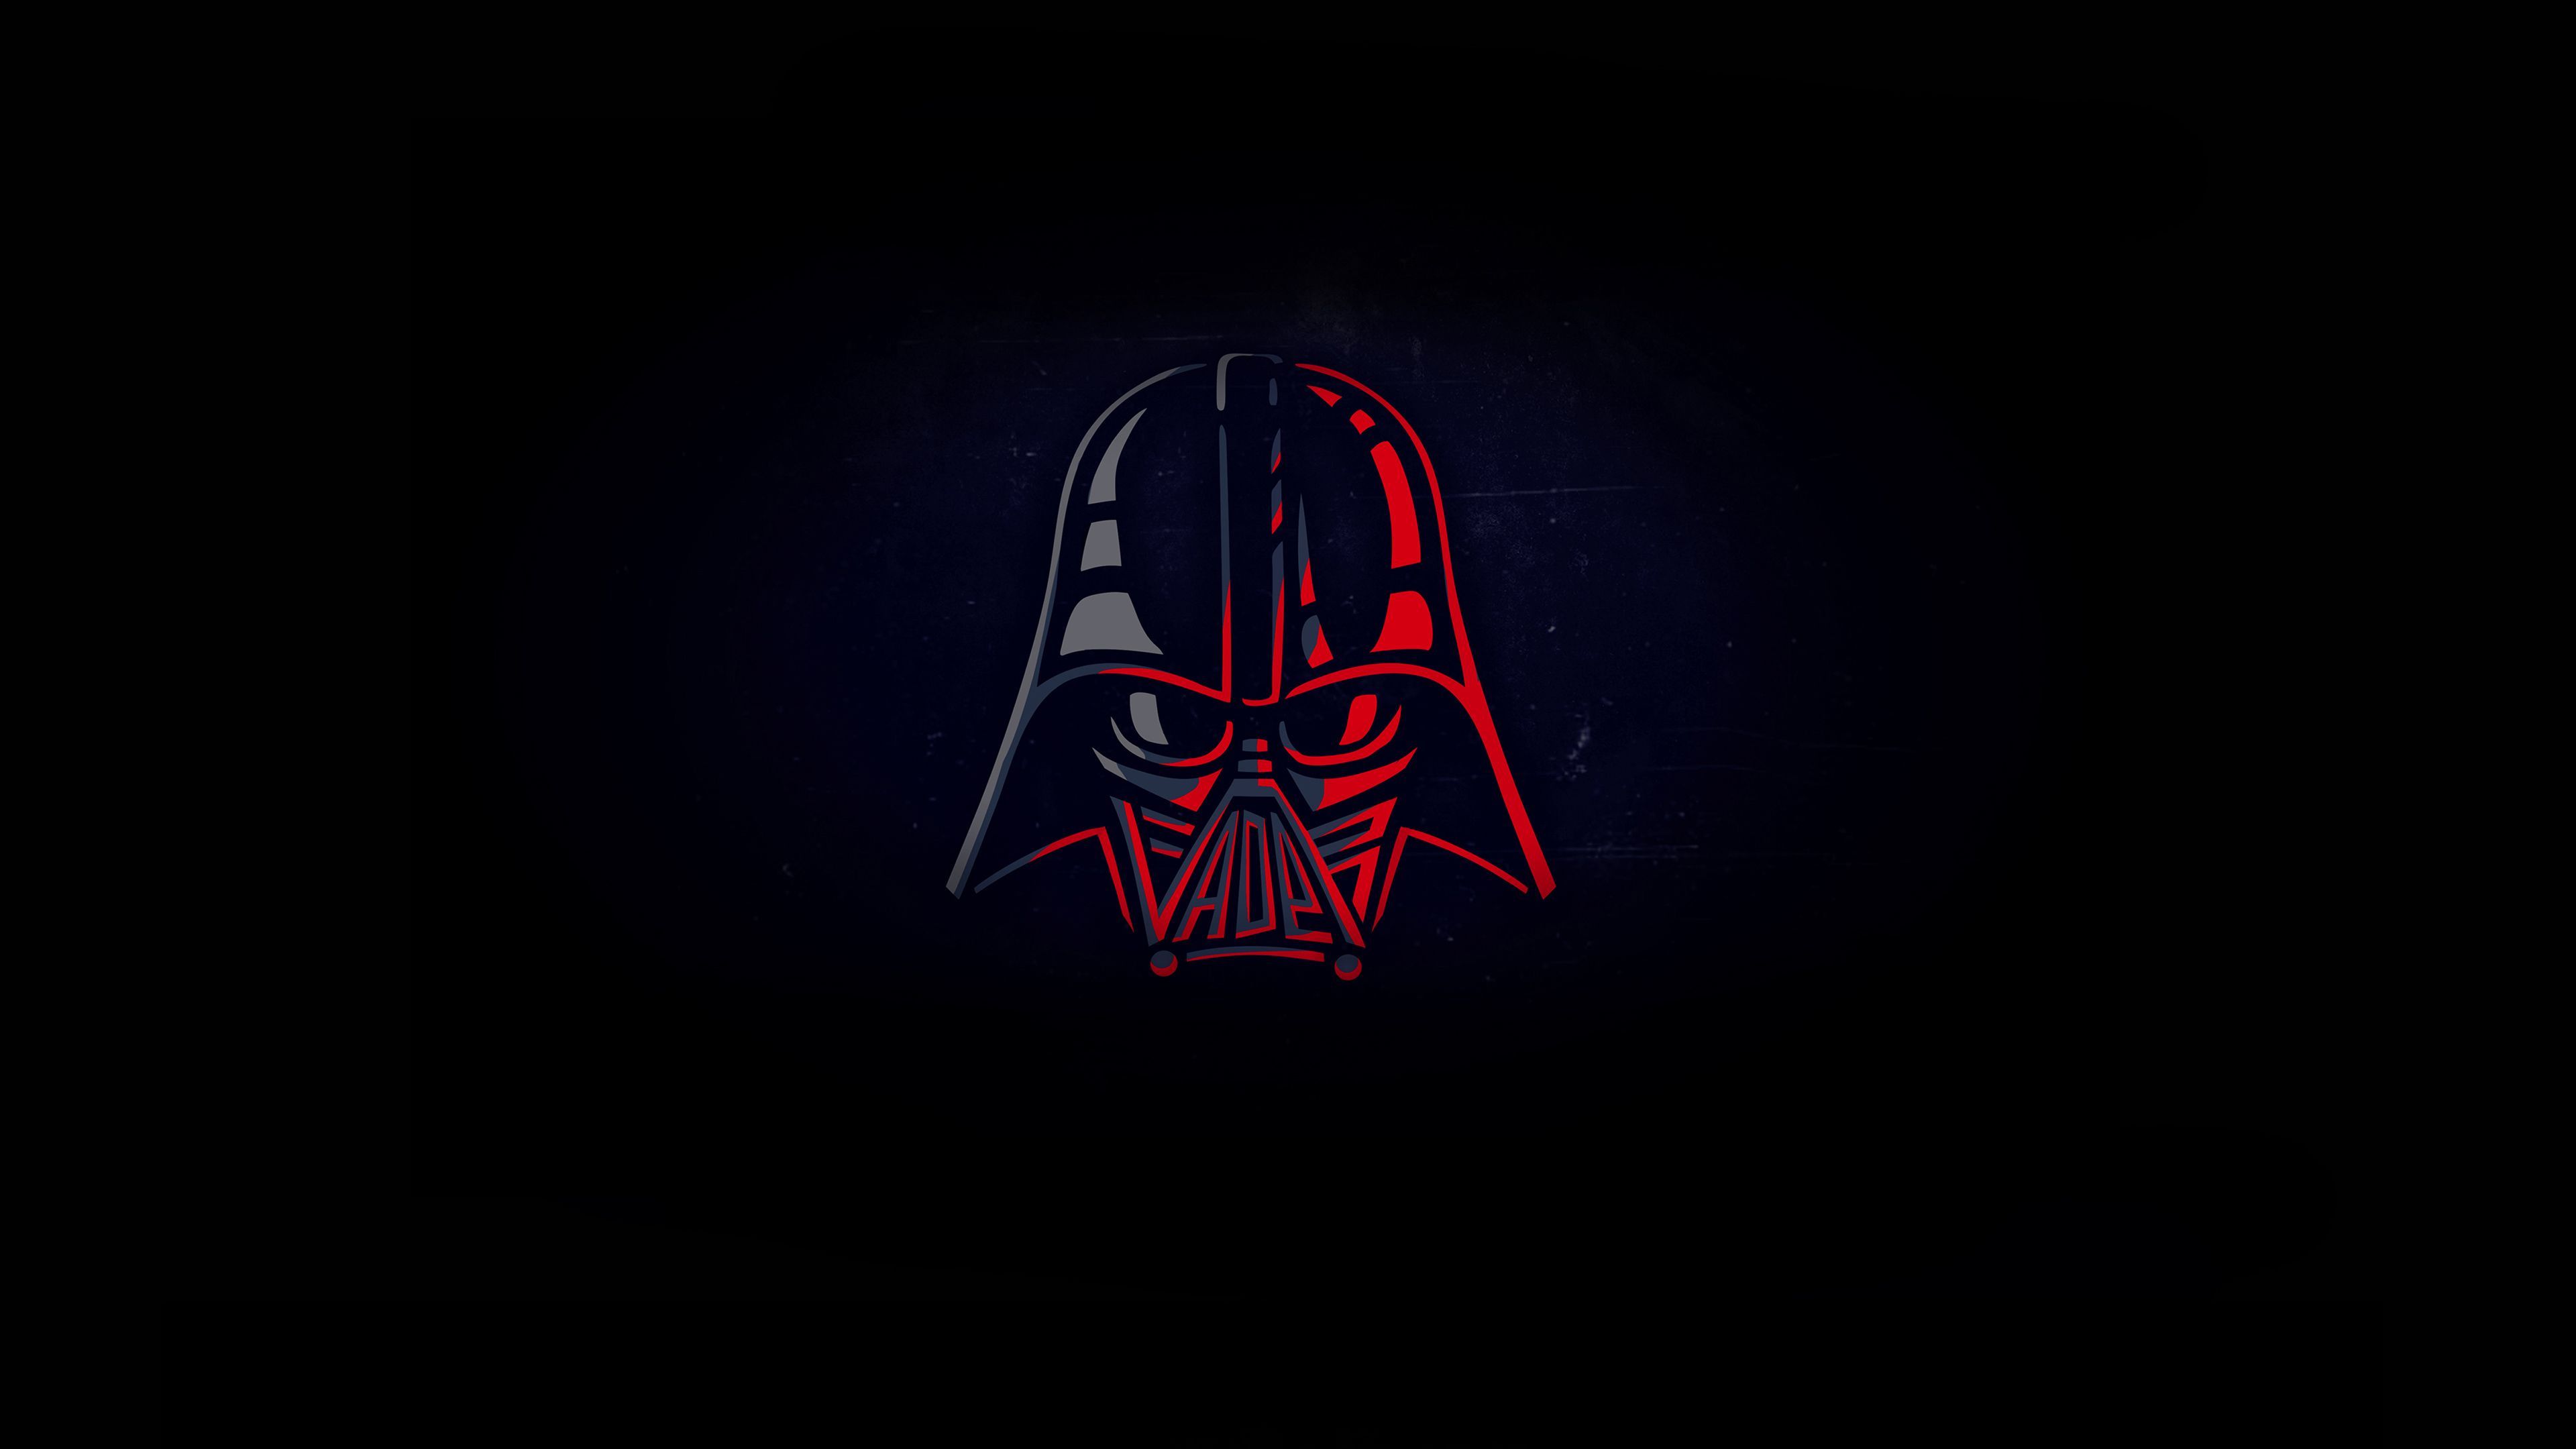 Wallpaper Darth Vader 4kwalpaperlist.com